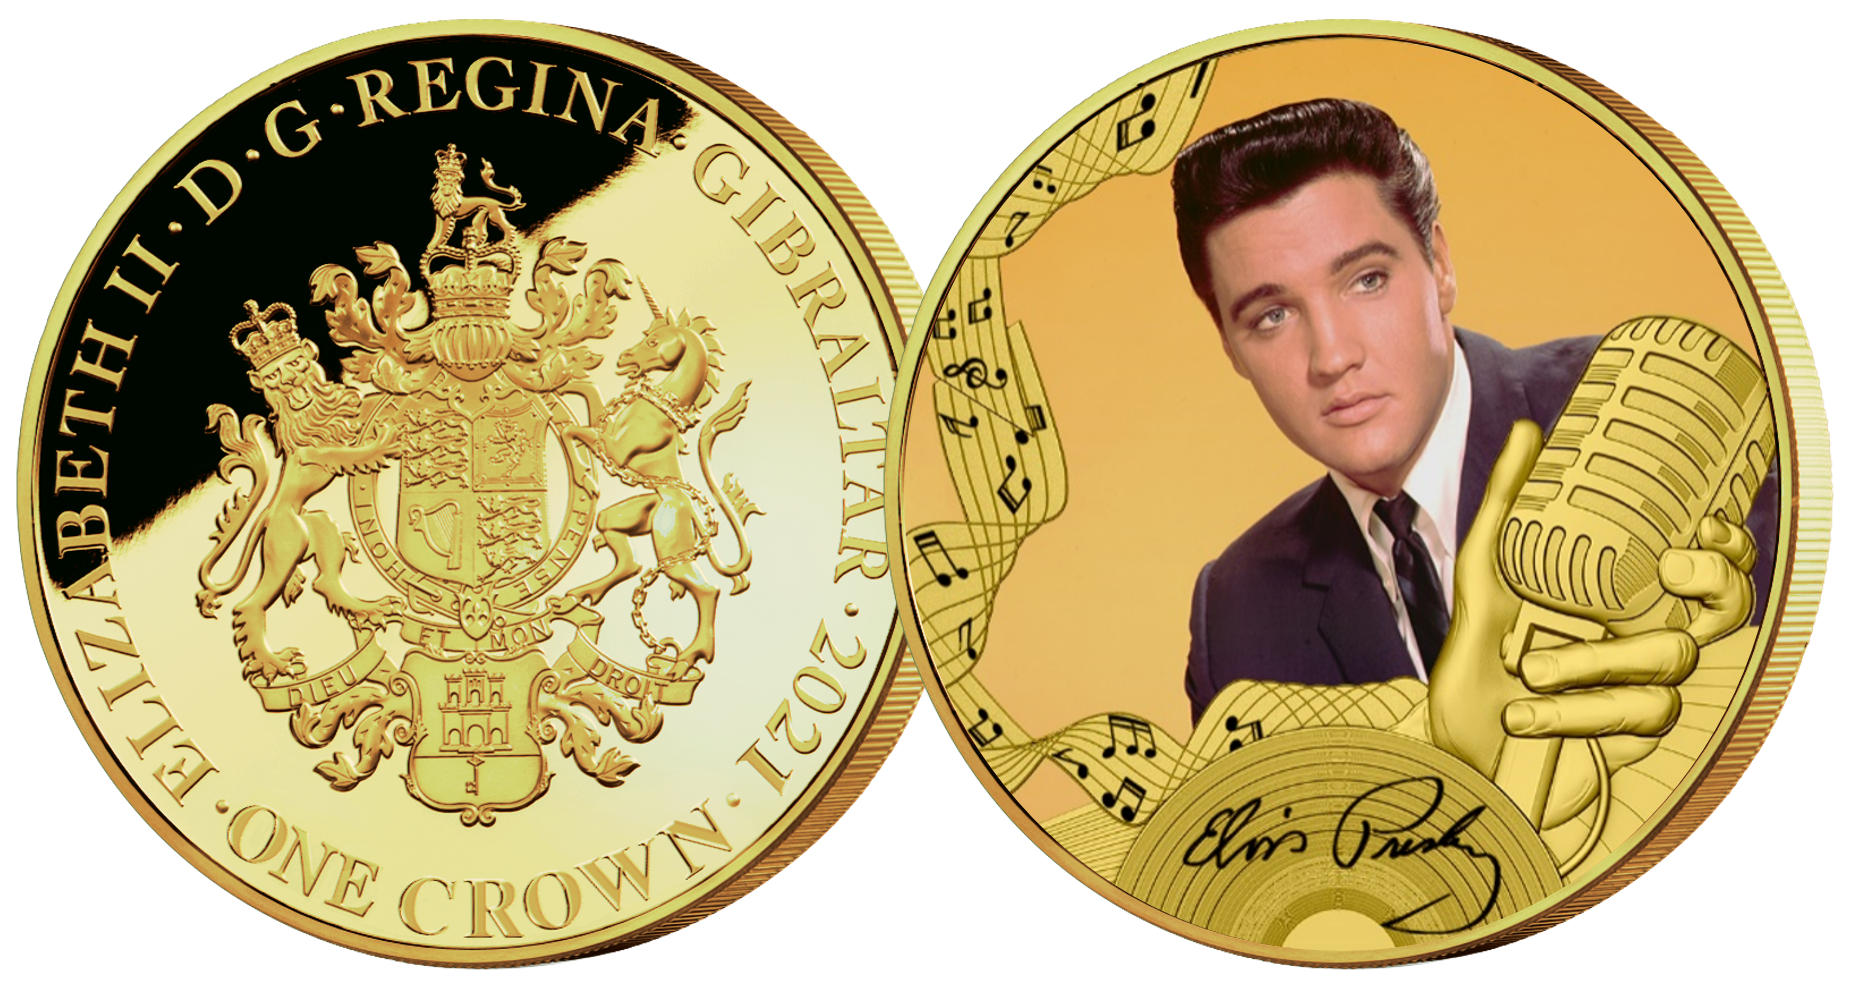   Elvis Presley - The King of Rock 'n' Roll. Denne flotte møntsamling er udgivet for at hylde manden som ændrede musikhistorien for altid, for hans gode udseende, charme og fantastiske stemme. Mønten kan blive din i dag for kun 149 kr. inkl. porto.